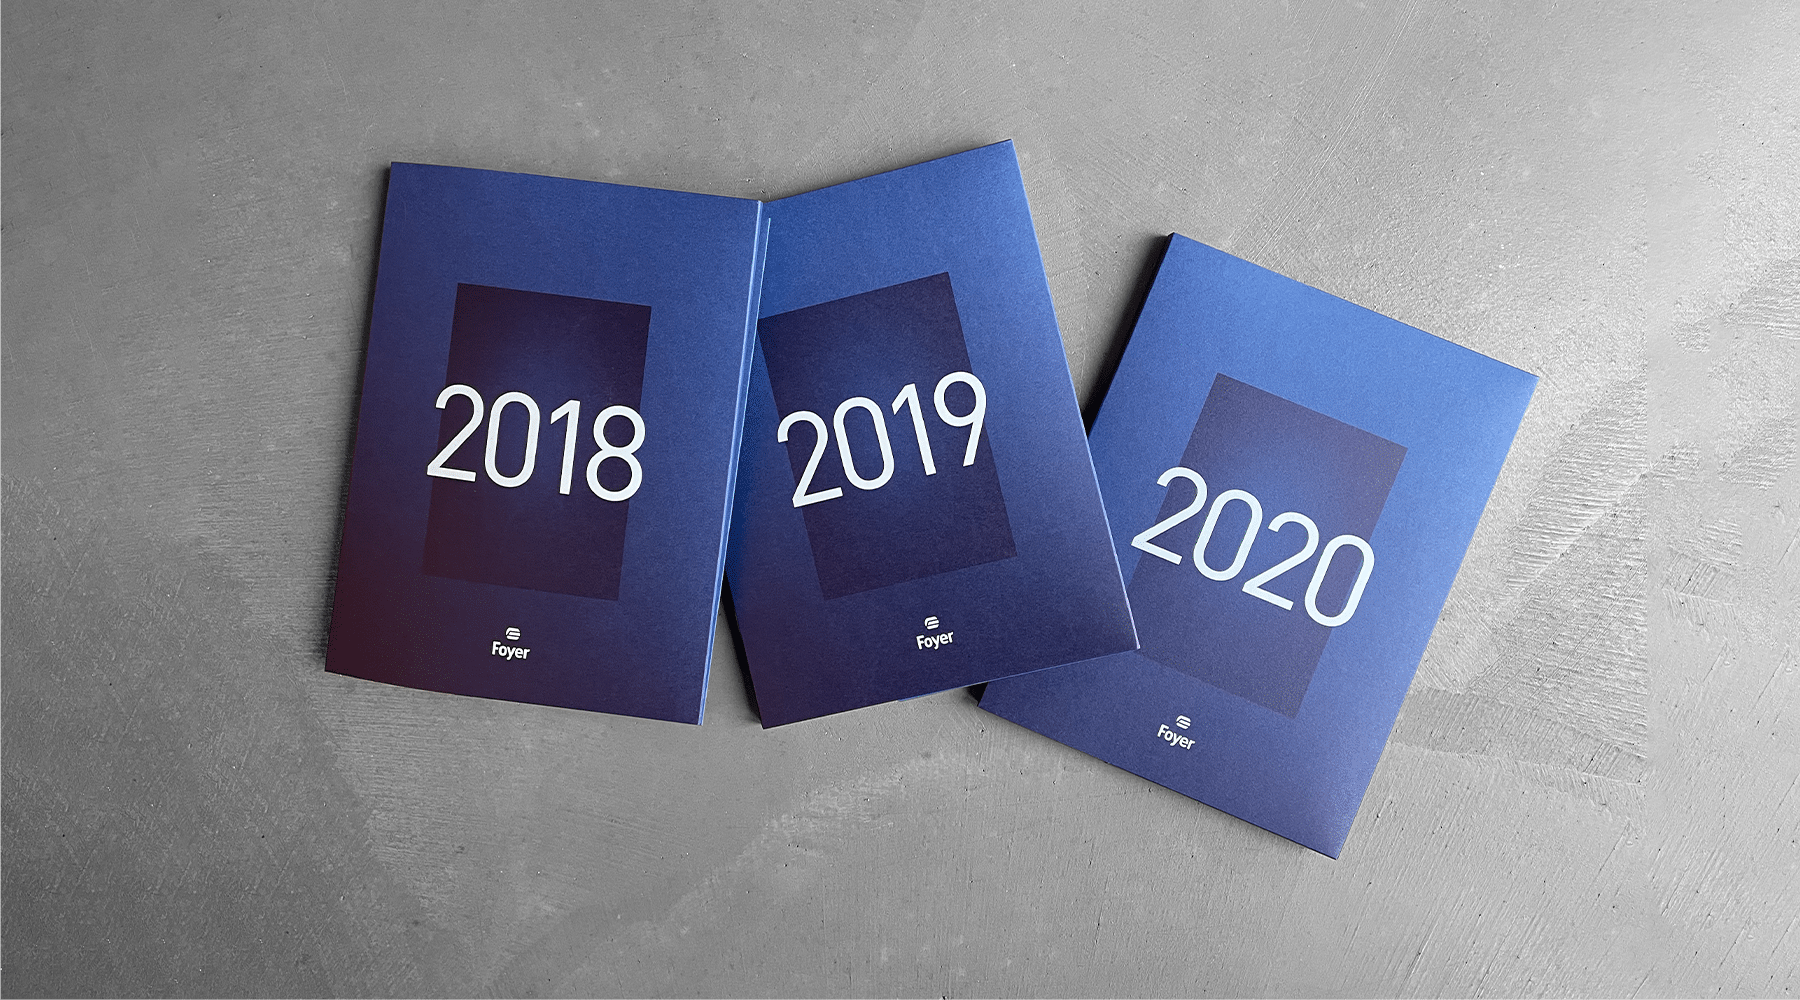 Trois rapports annuels de Foyer avec des couvertures bleues disposés en éventail, chacun portant les années 2018, 2019, et 2020 en grand format sur le devant.